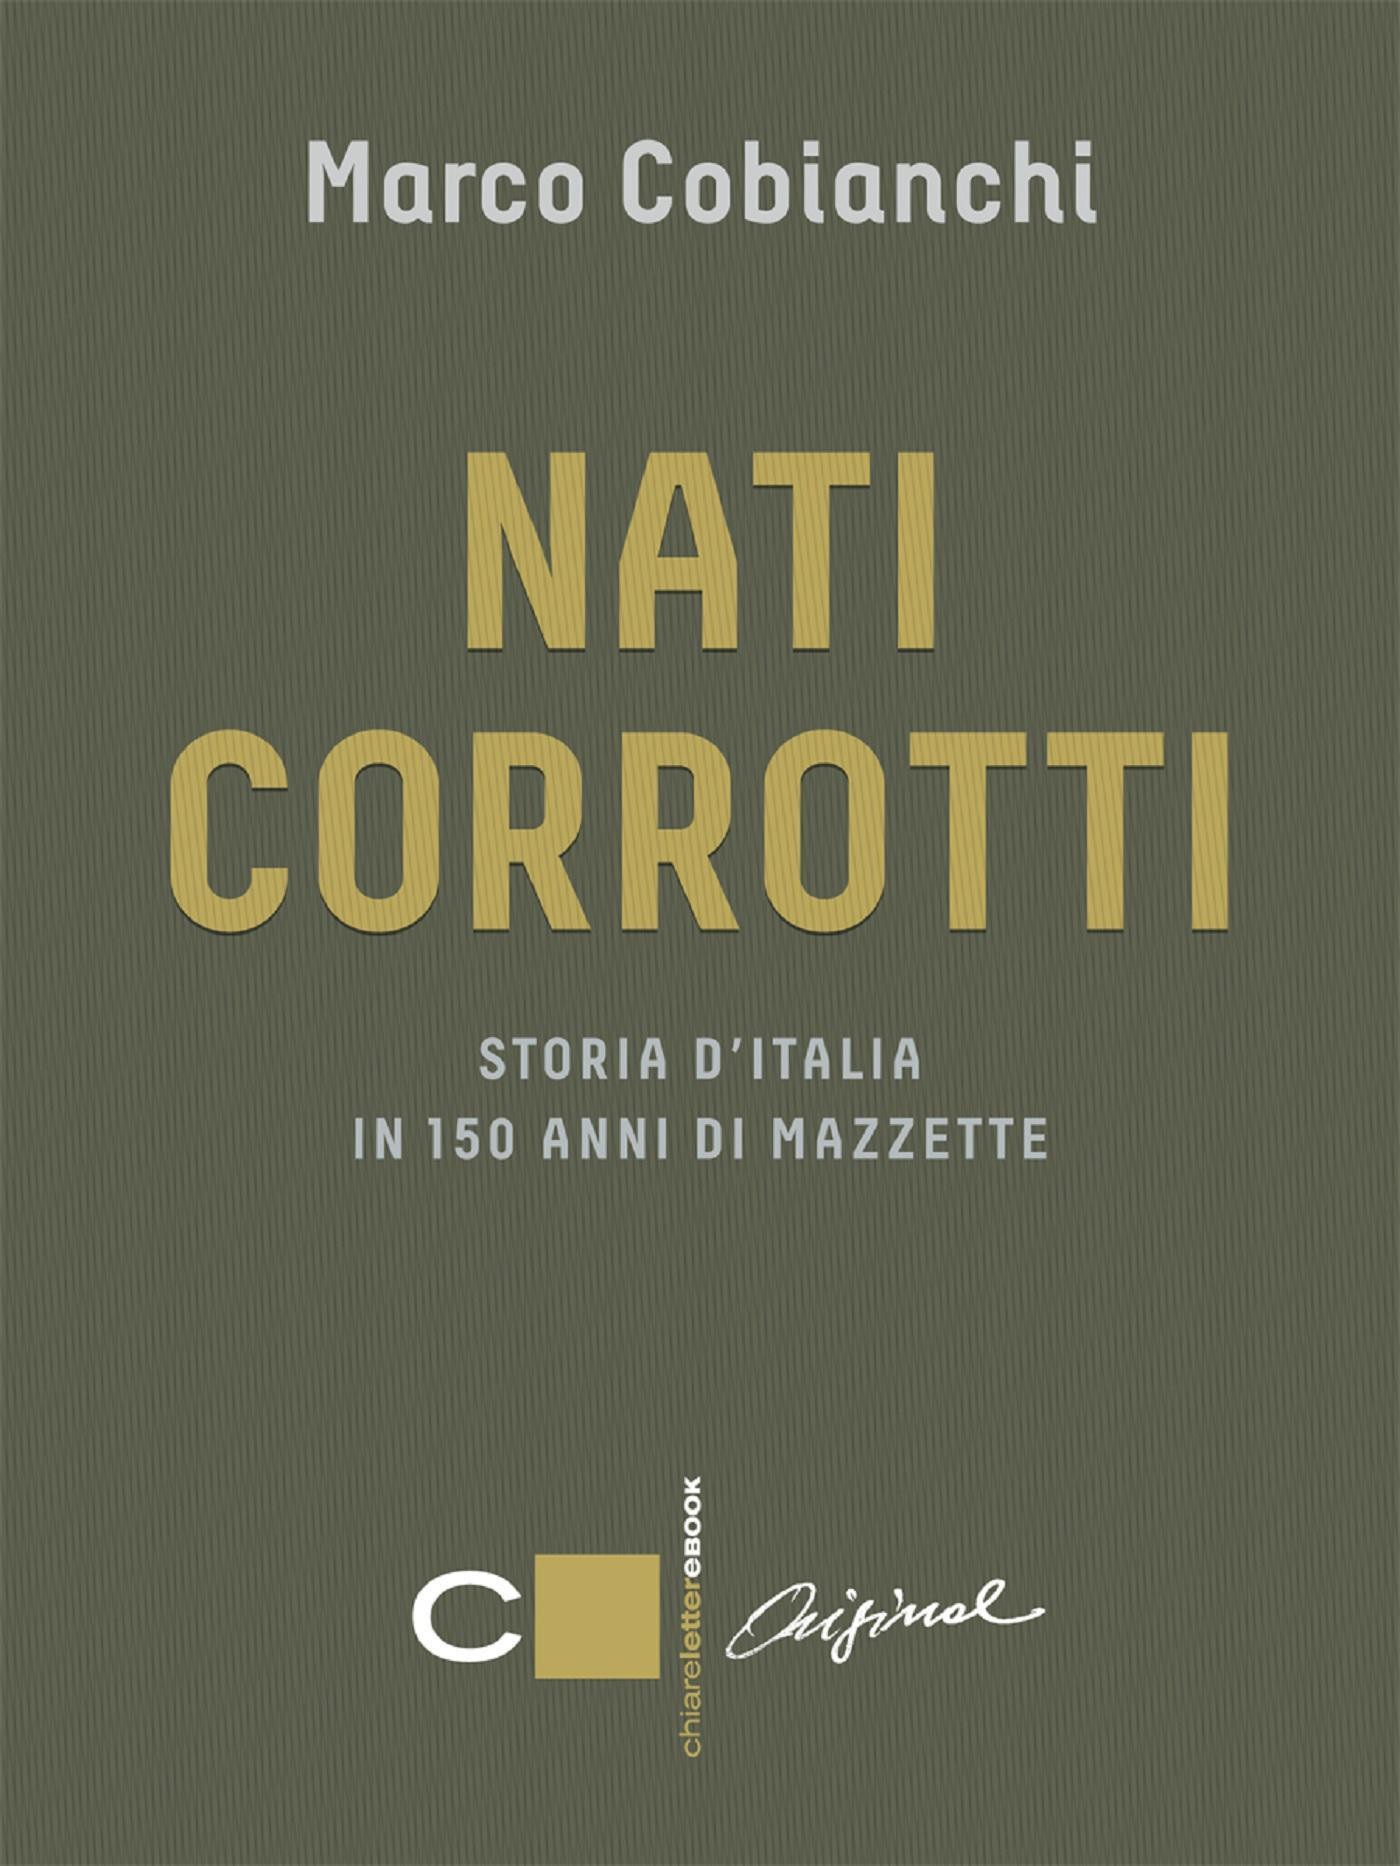 Nati corrotti - Librerie.coop